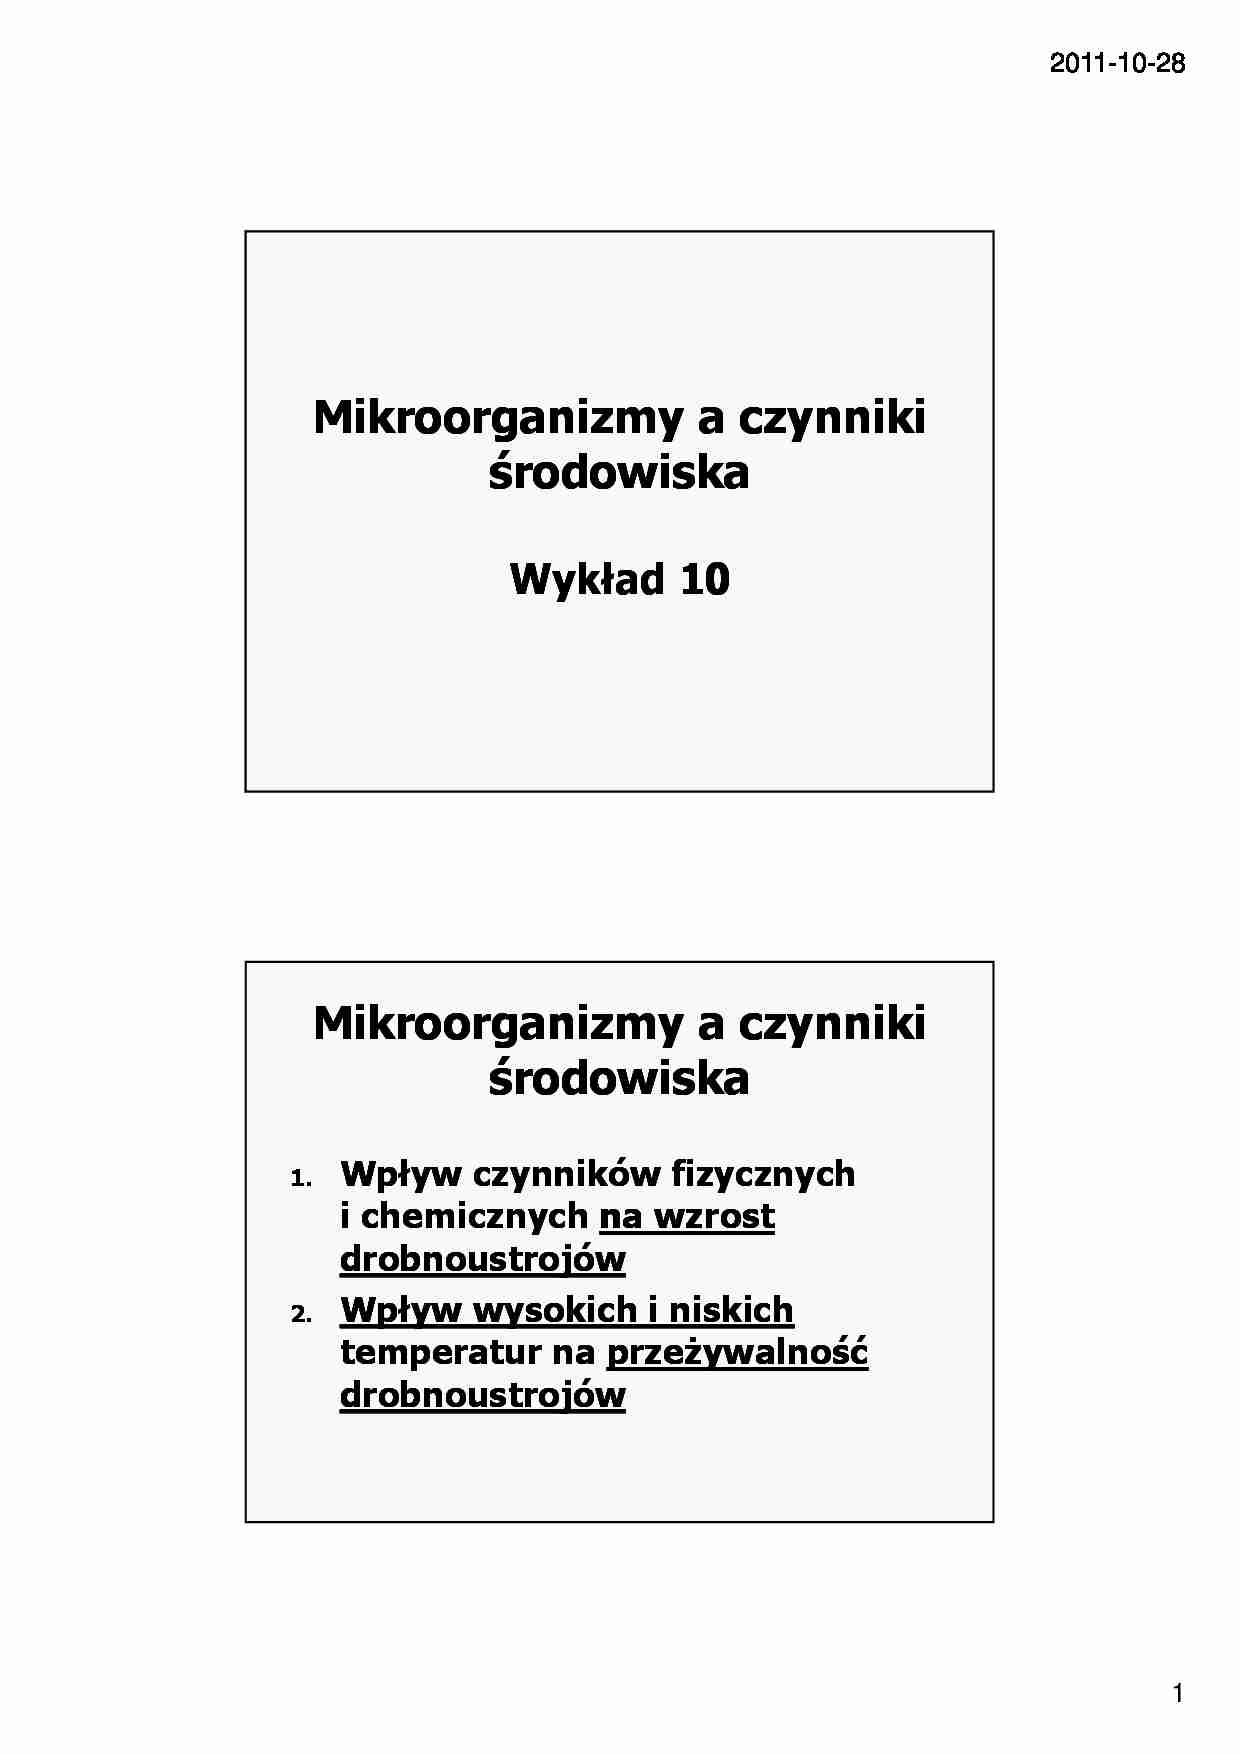 Mikrobiologia- wykład 10 - strona 1